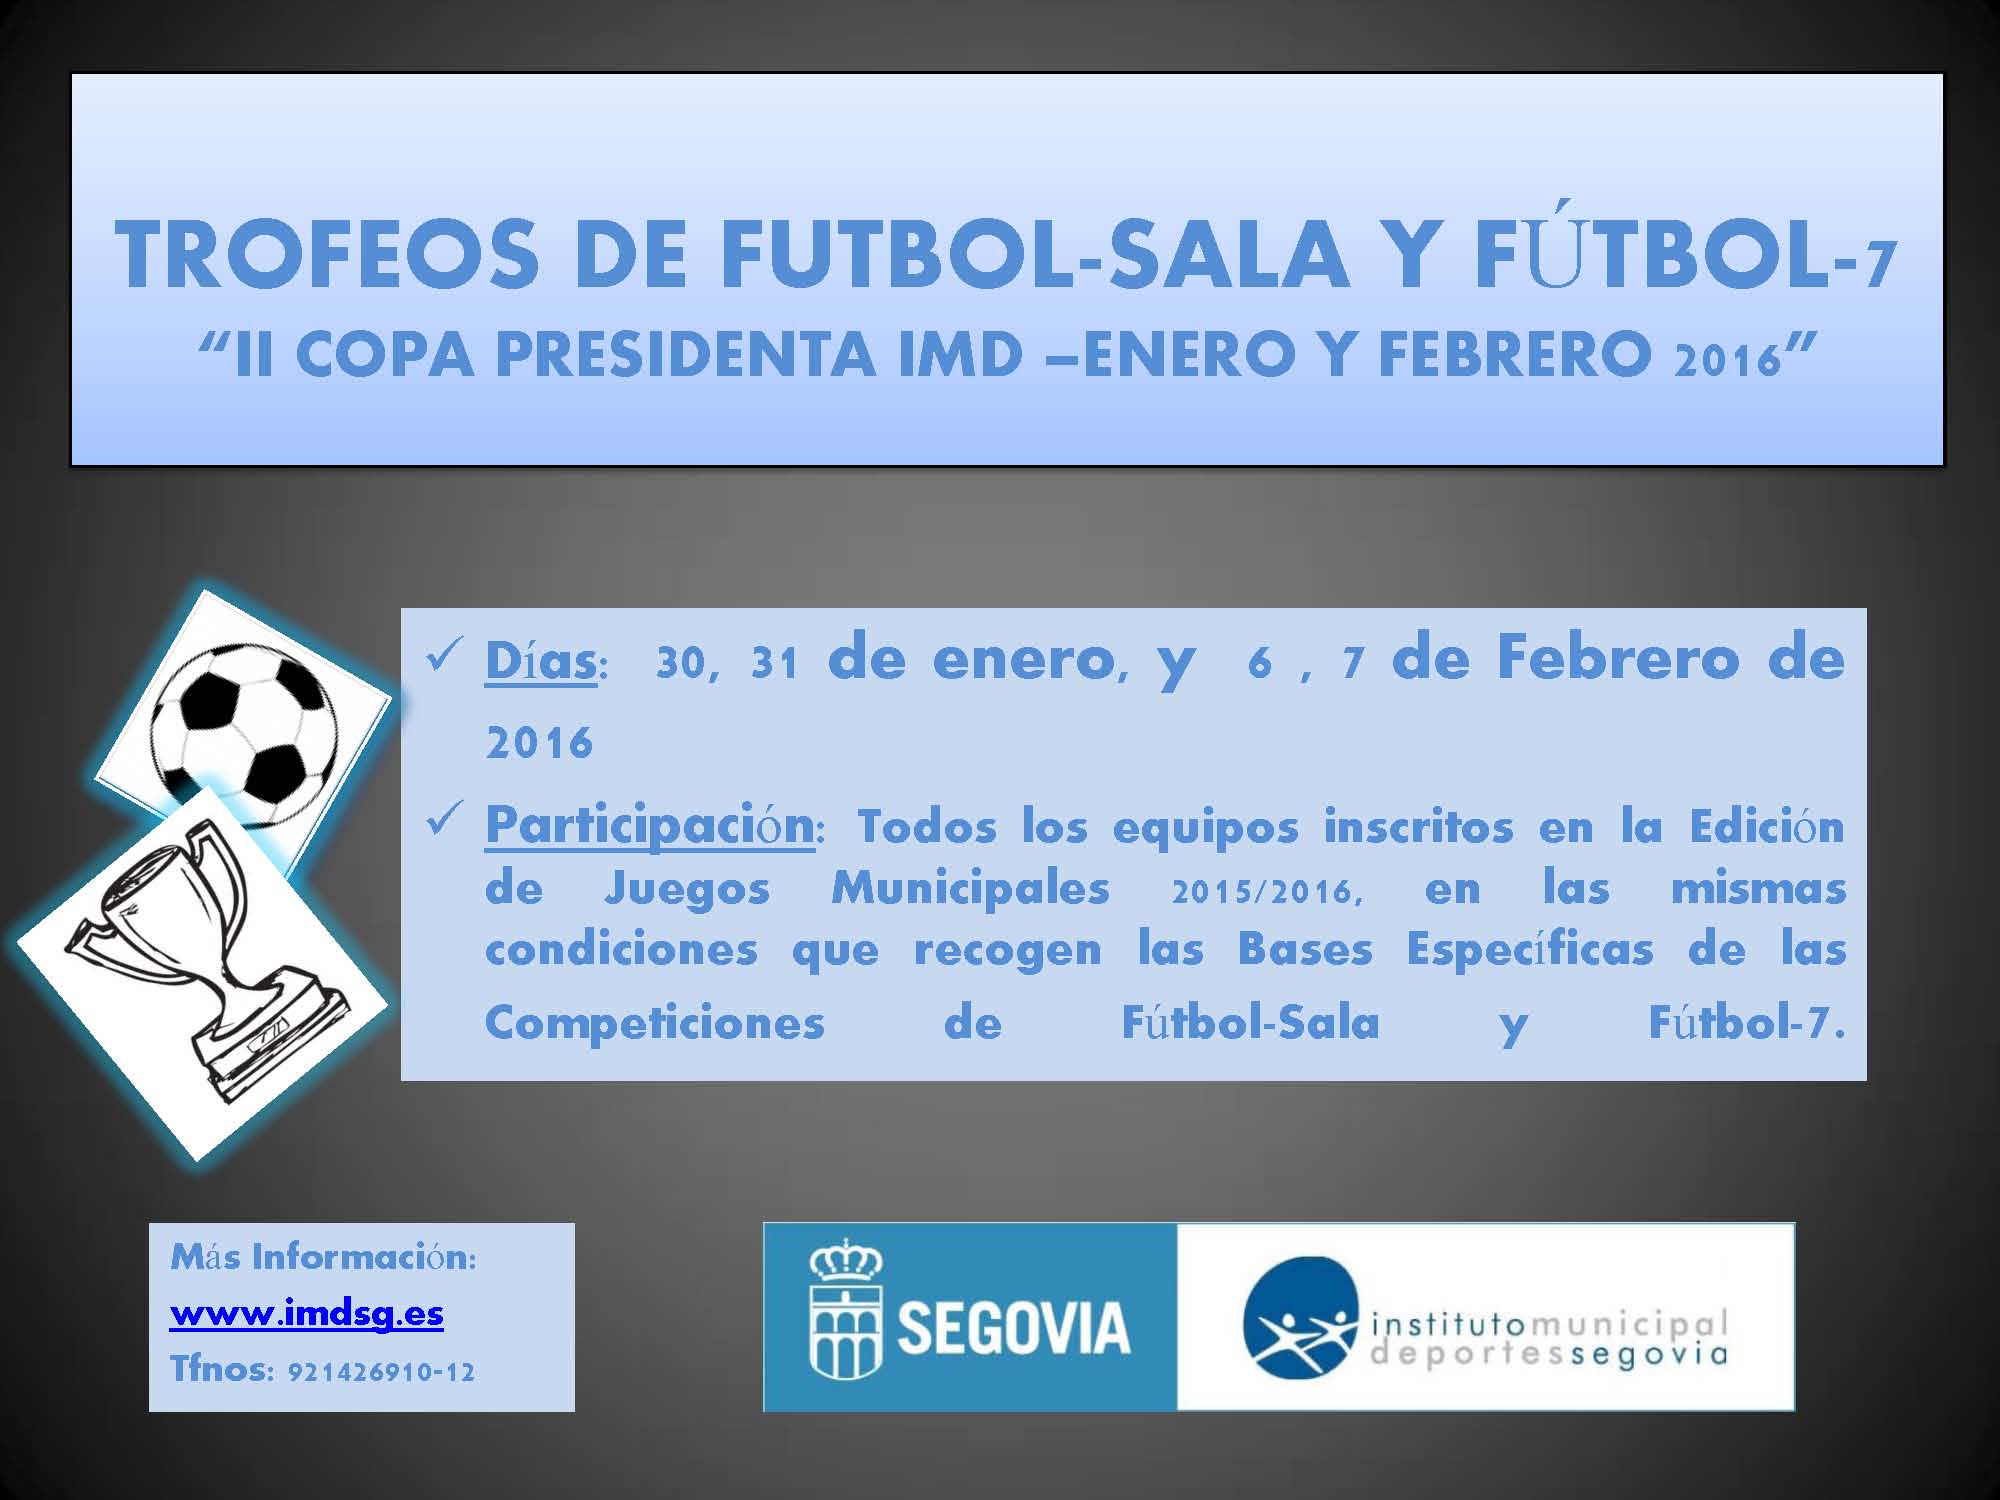 El Instituto Municipal de Deportes organiza el “II Trofeo Presidenta IMD” de Fútbol-Sala y Fútbol-7